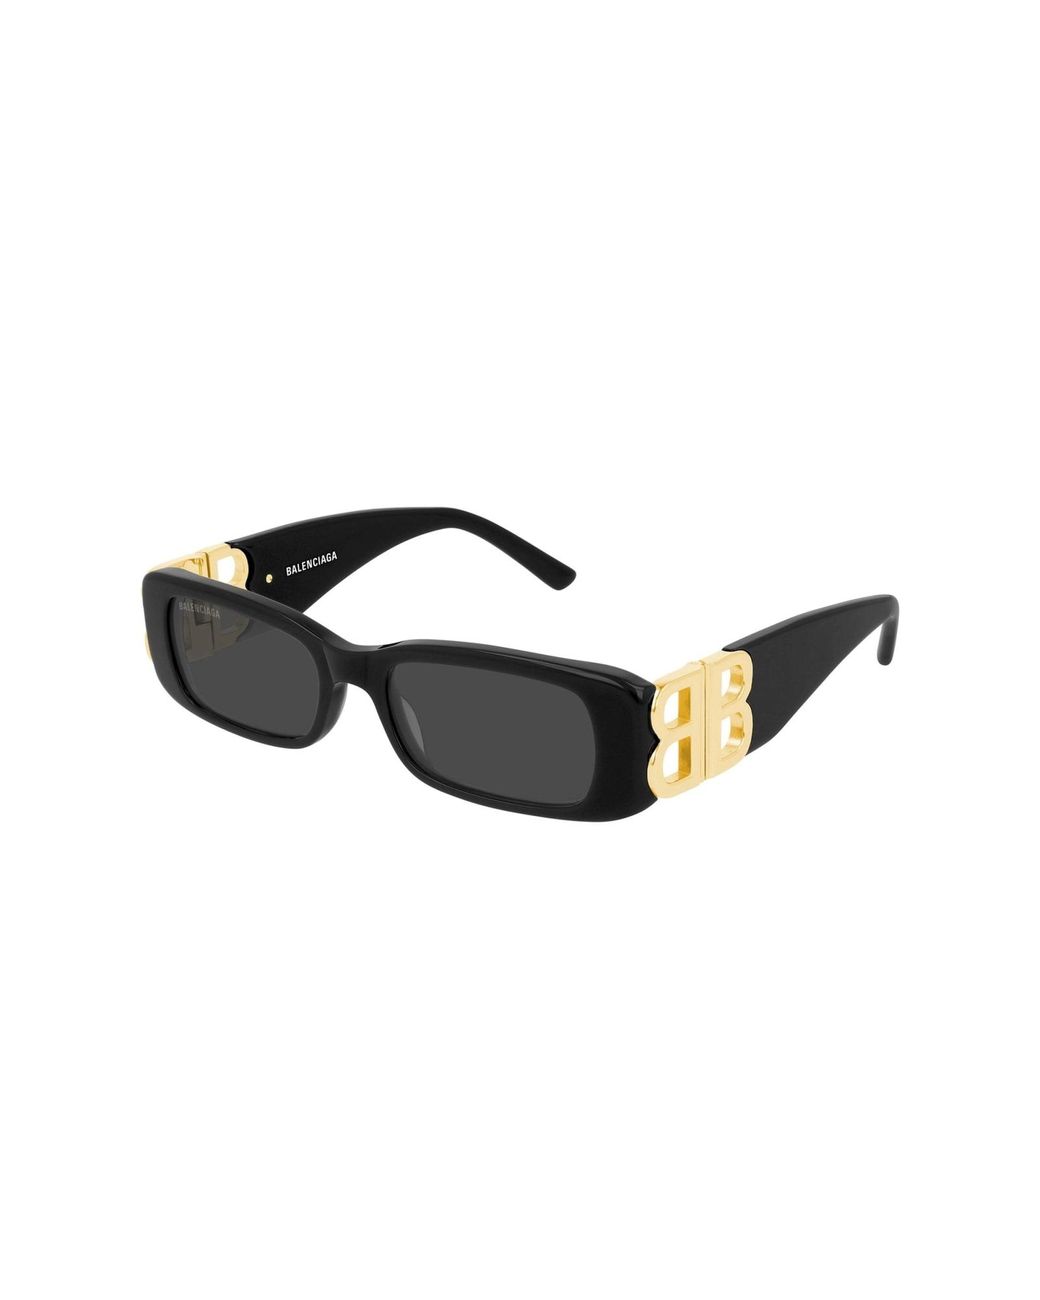 Balenciaga Bb0096s-001 Dynasty - Black Sunglasses | Lyst